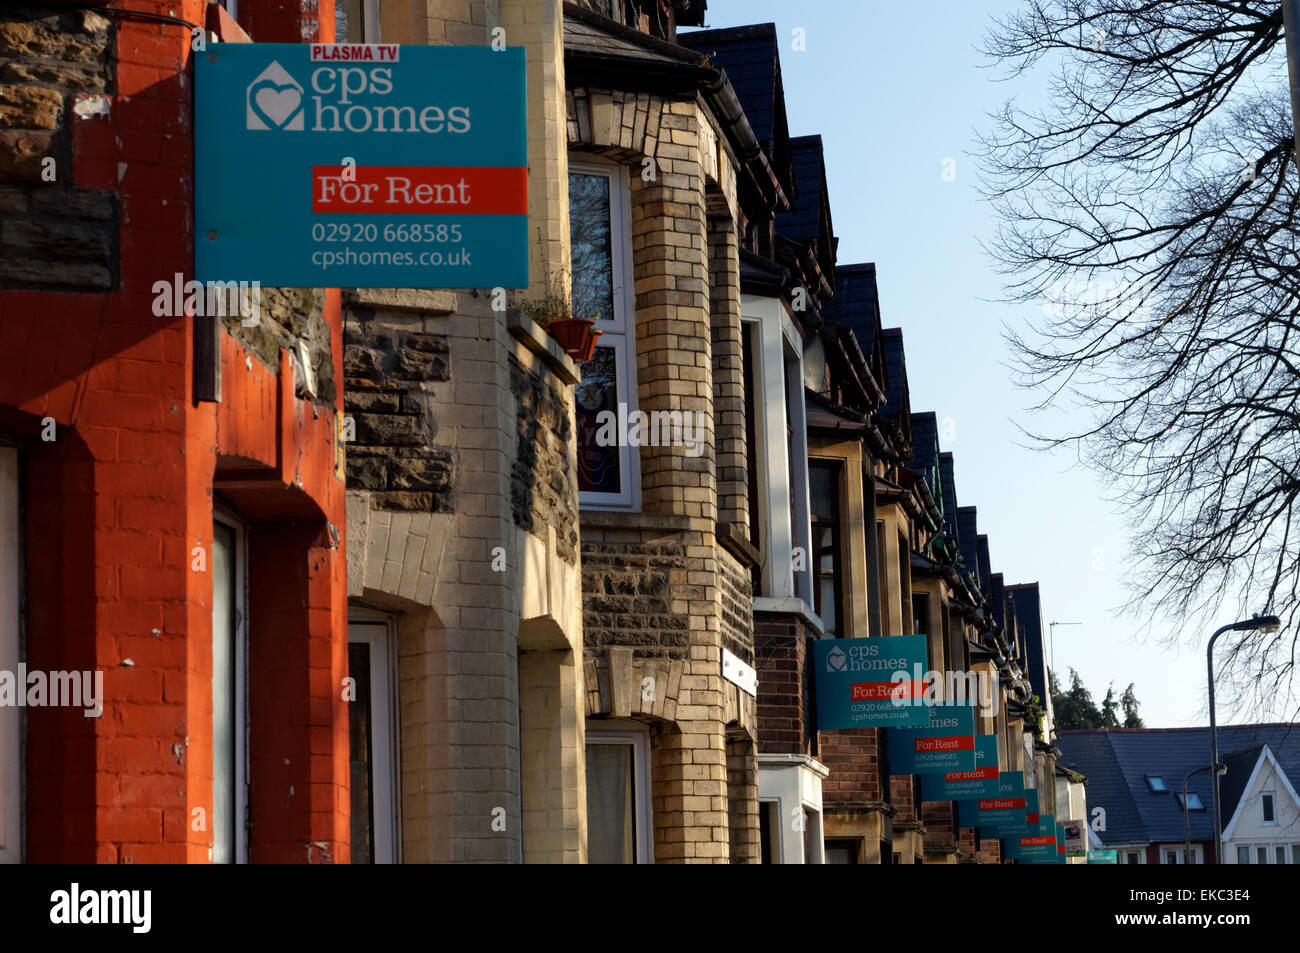 Zeile "for Rent" unterschreibt, Student Bereich, Cathays, Cardiff, Wales, UK. Stockfoto